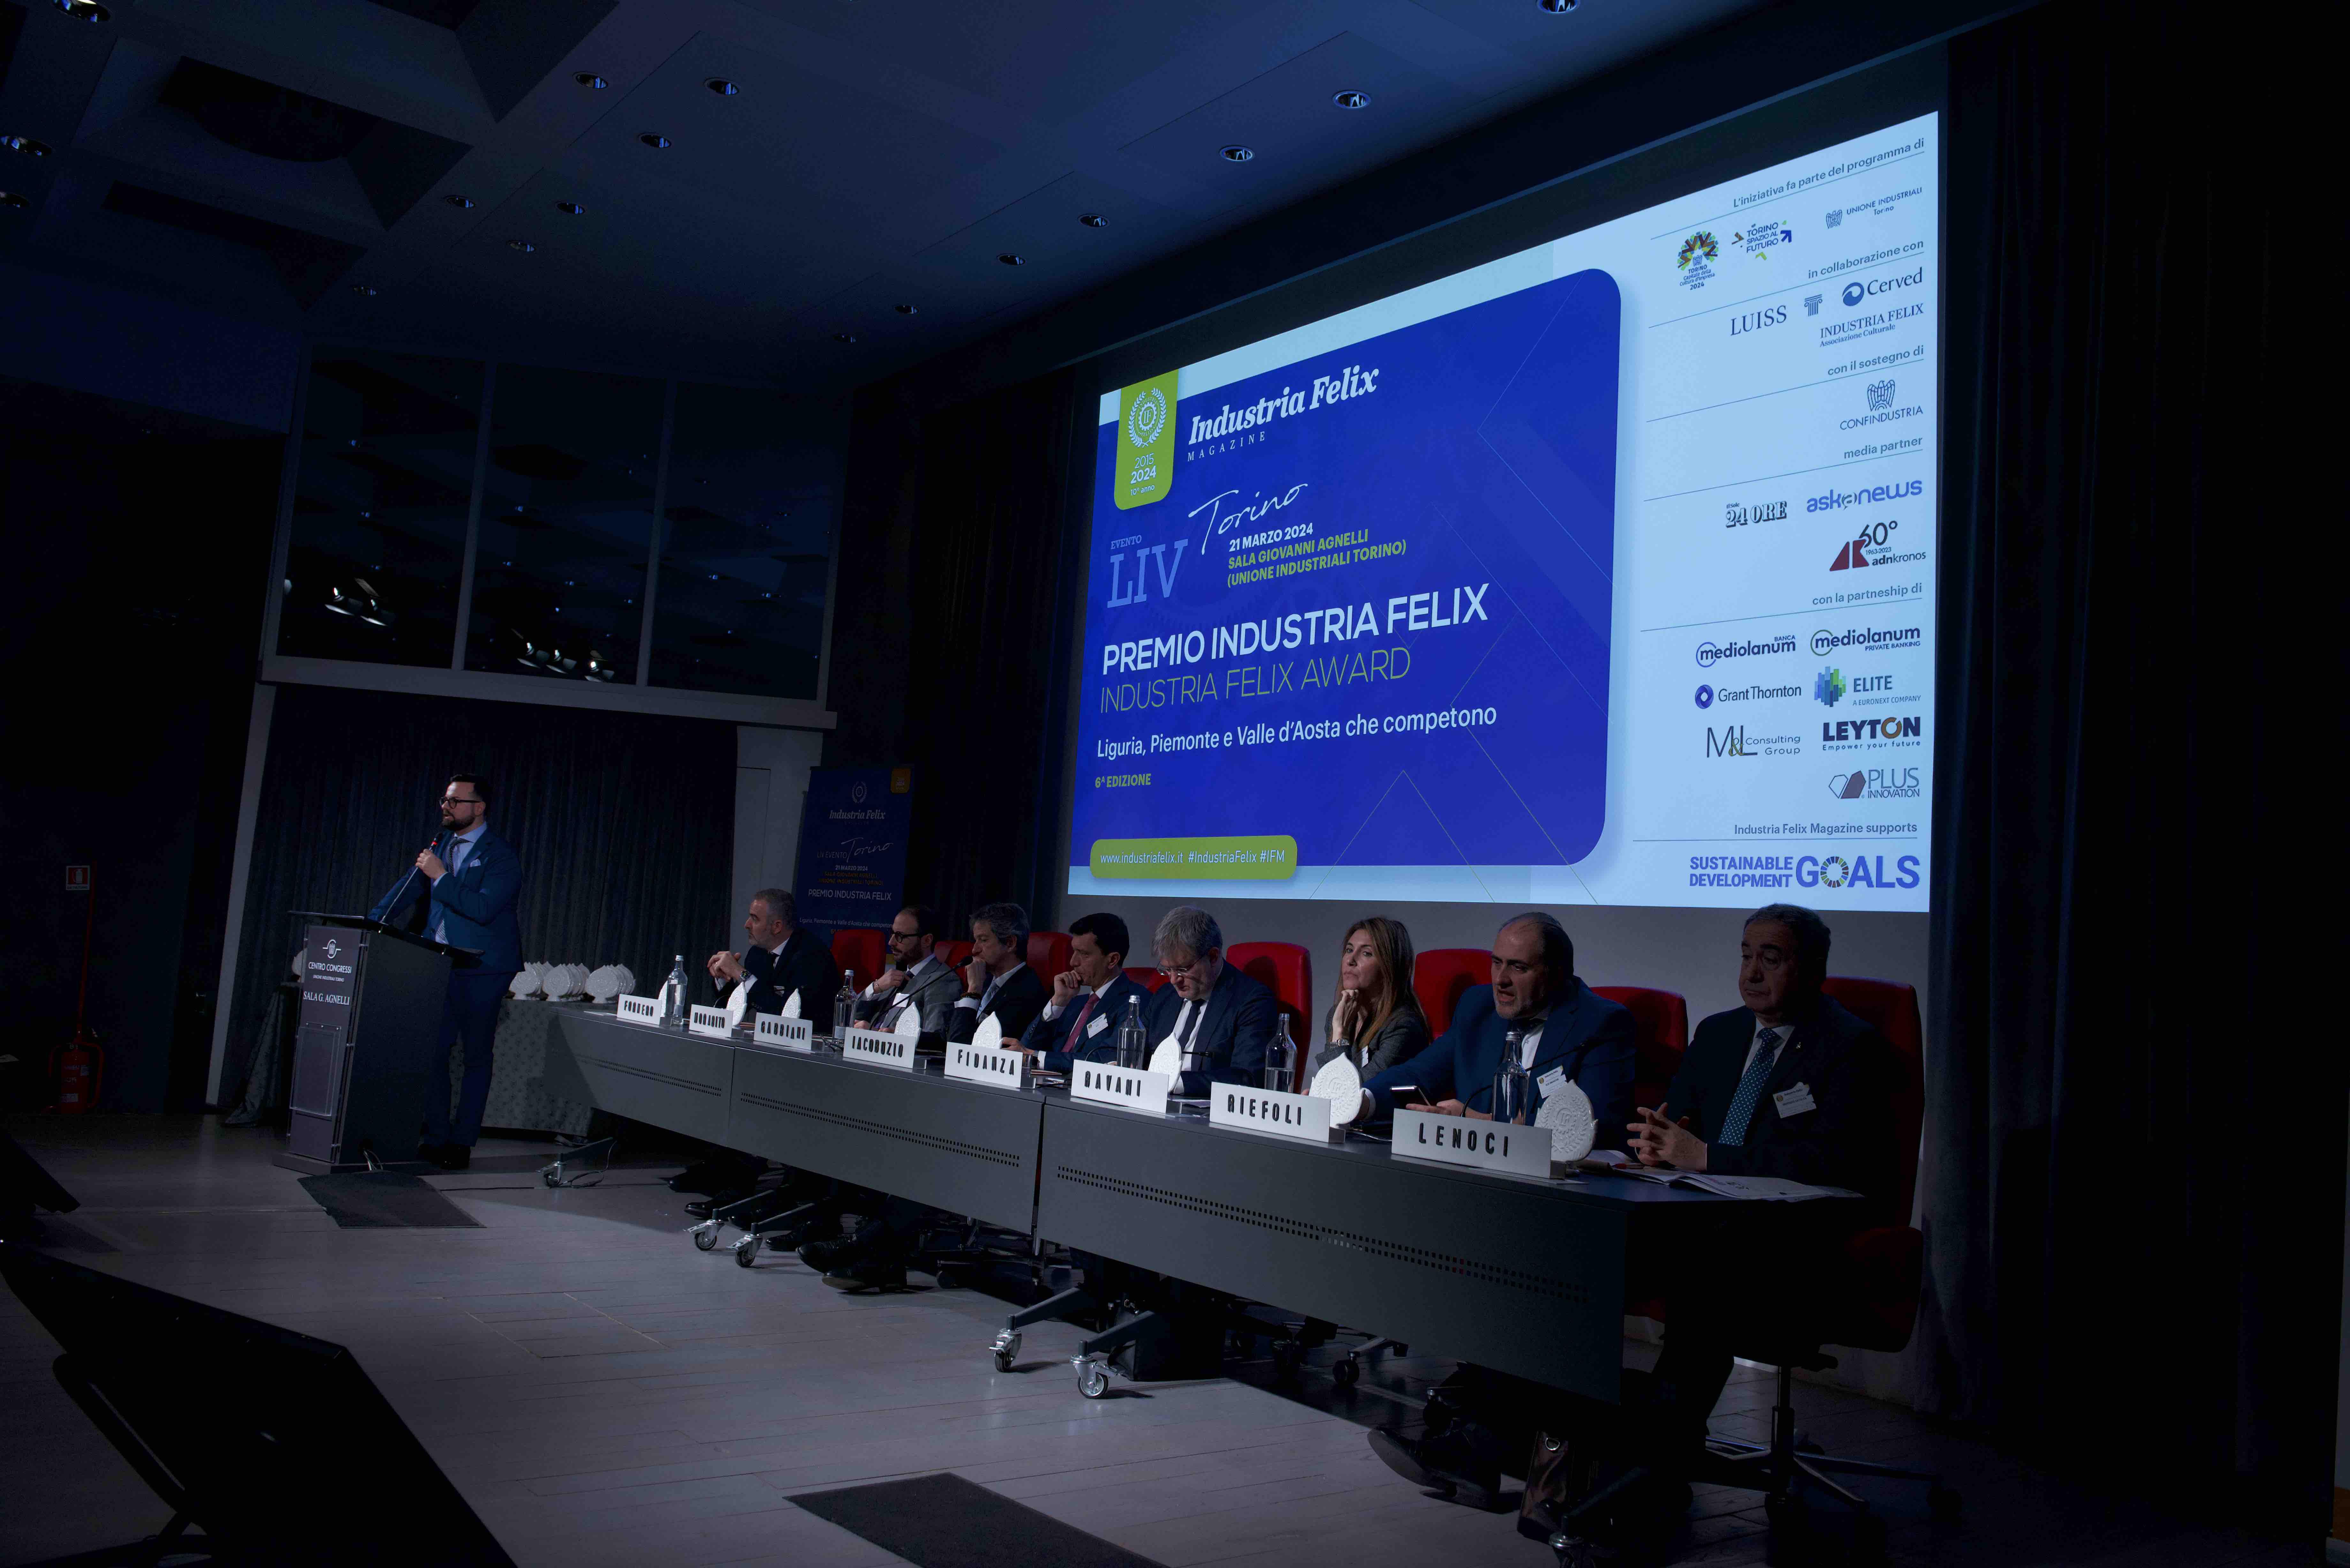 Industria Felix premia le 56 più competitive di Piemonte, Liguria e Valle d’Aosta